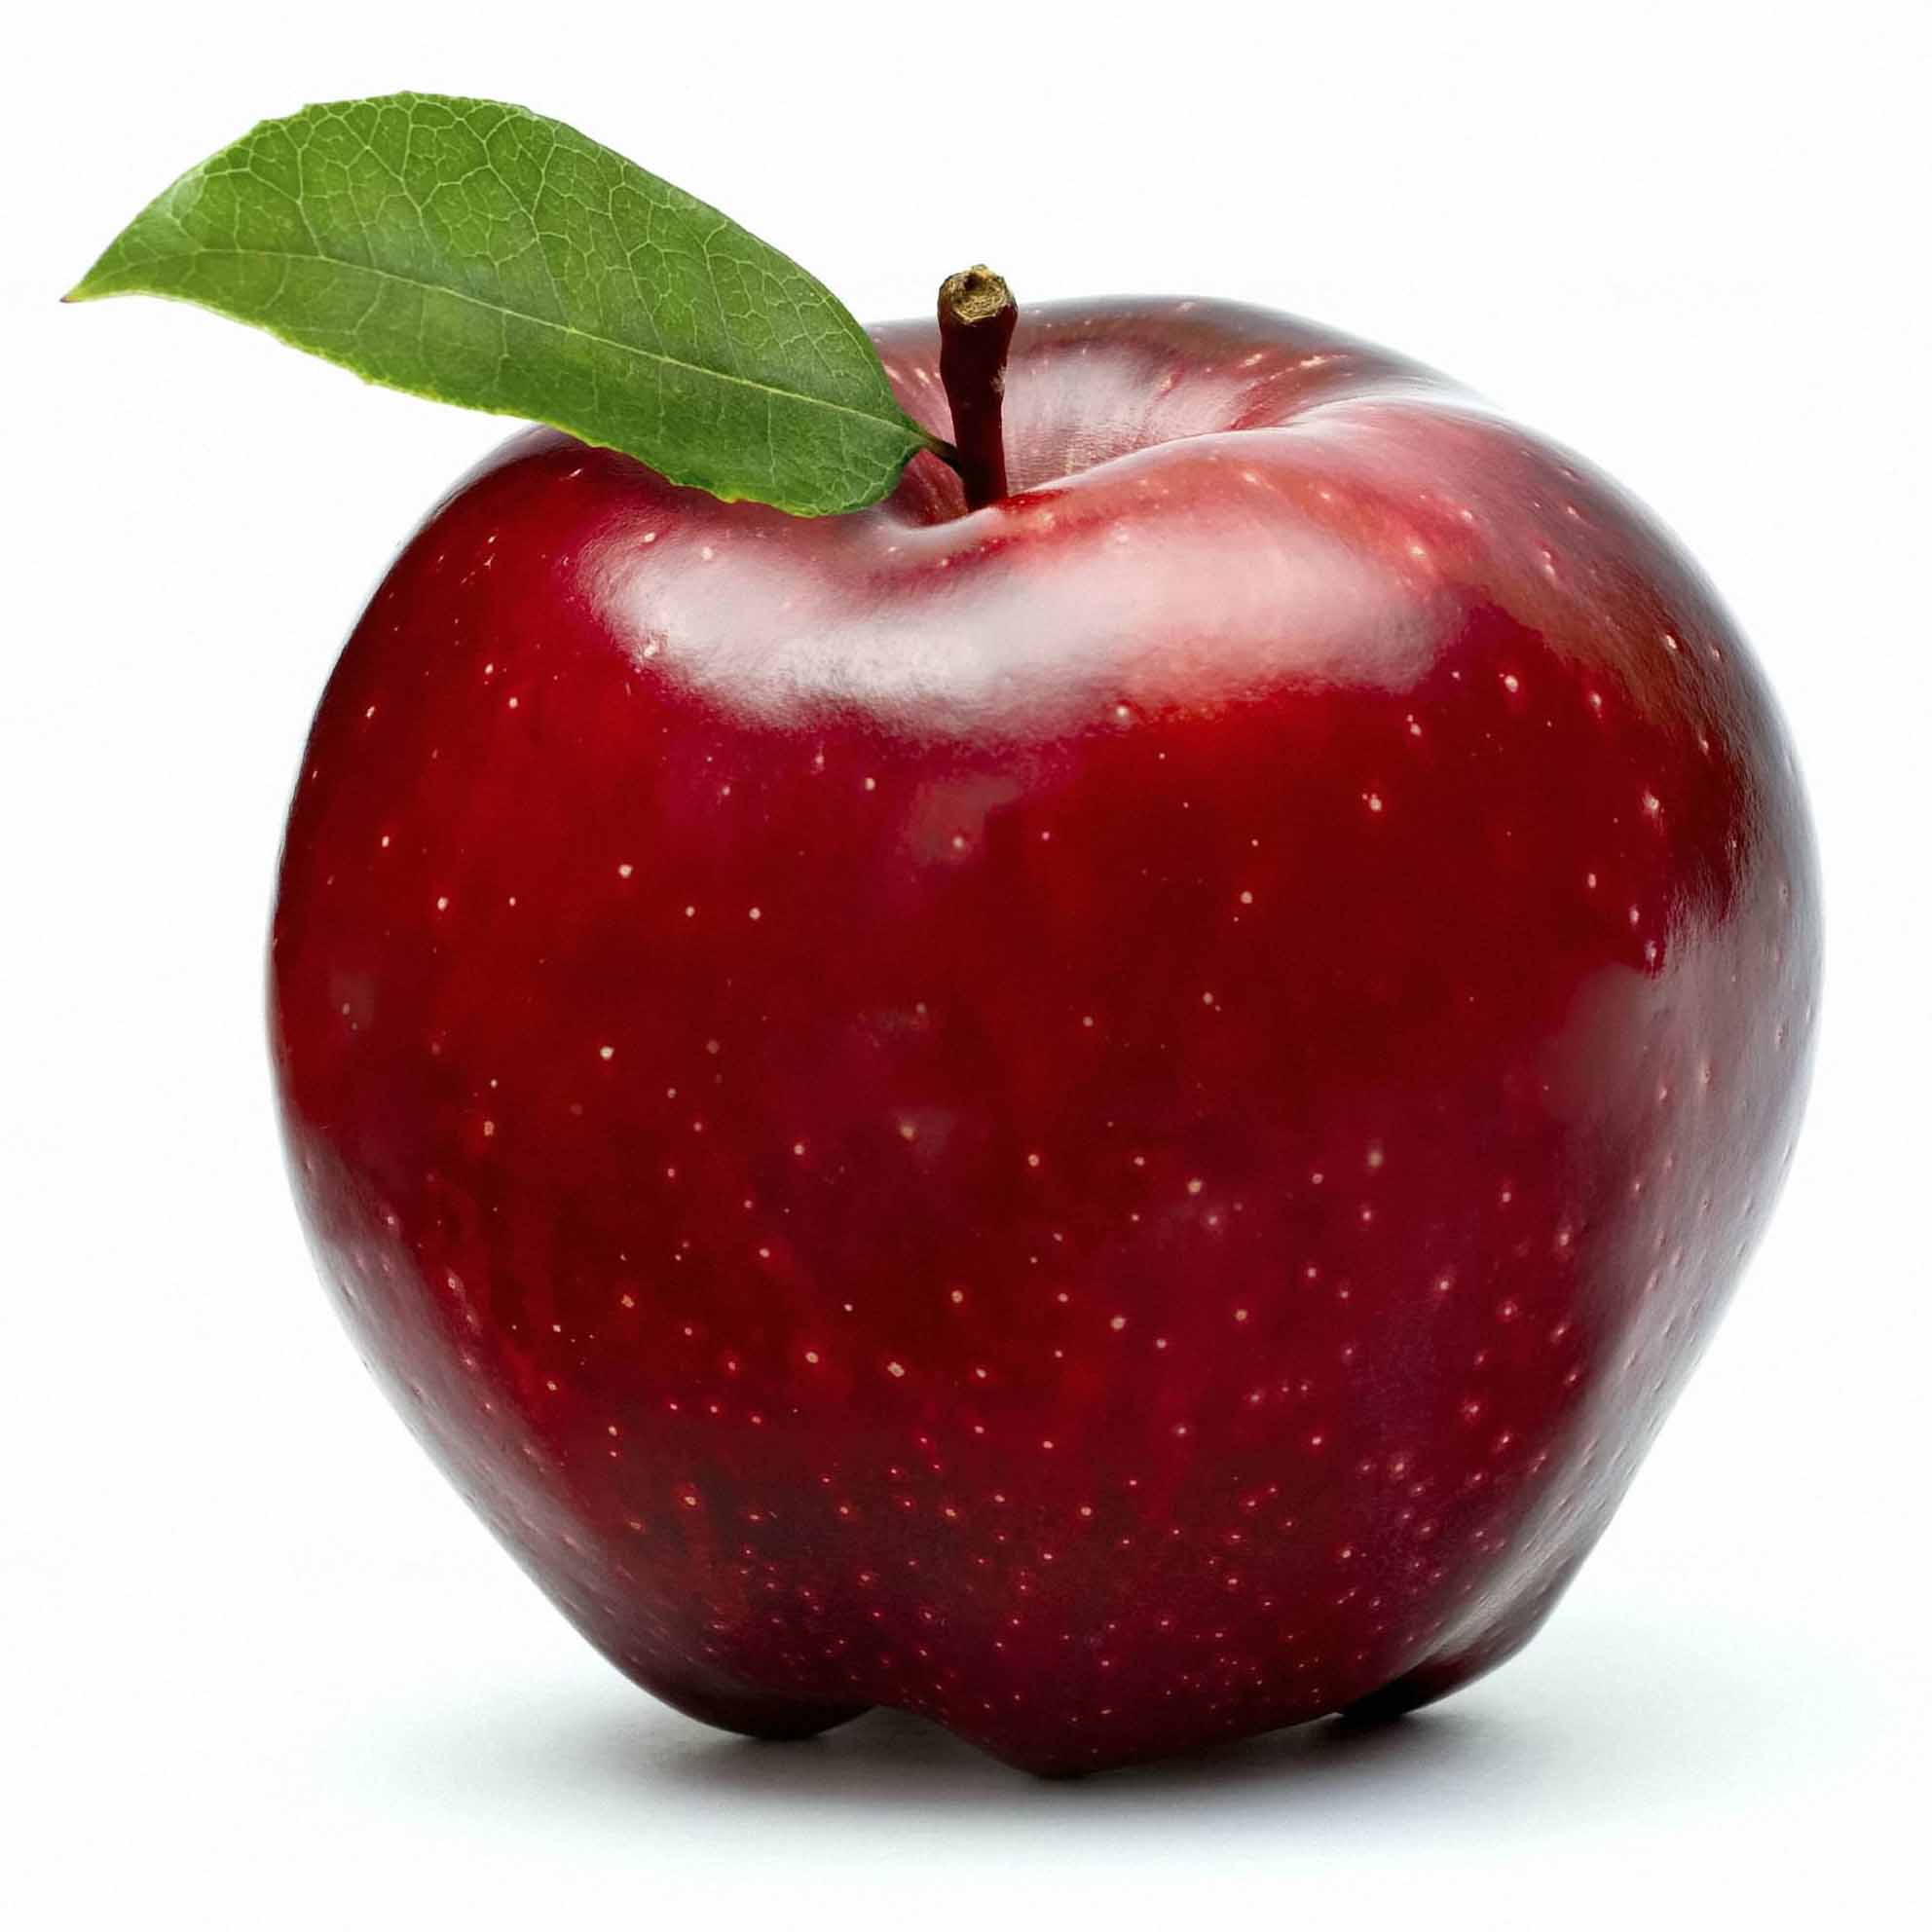 La mela un frutto squisito che non puo mancare nella nostra dieta